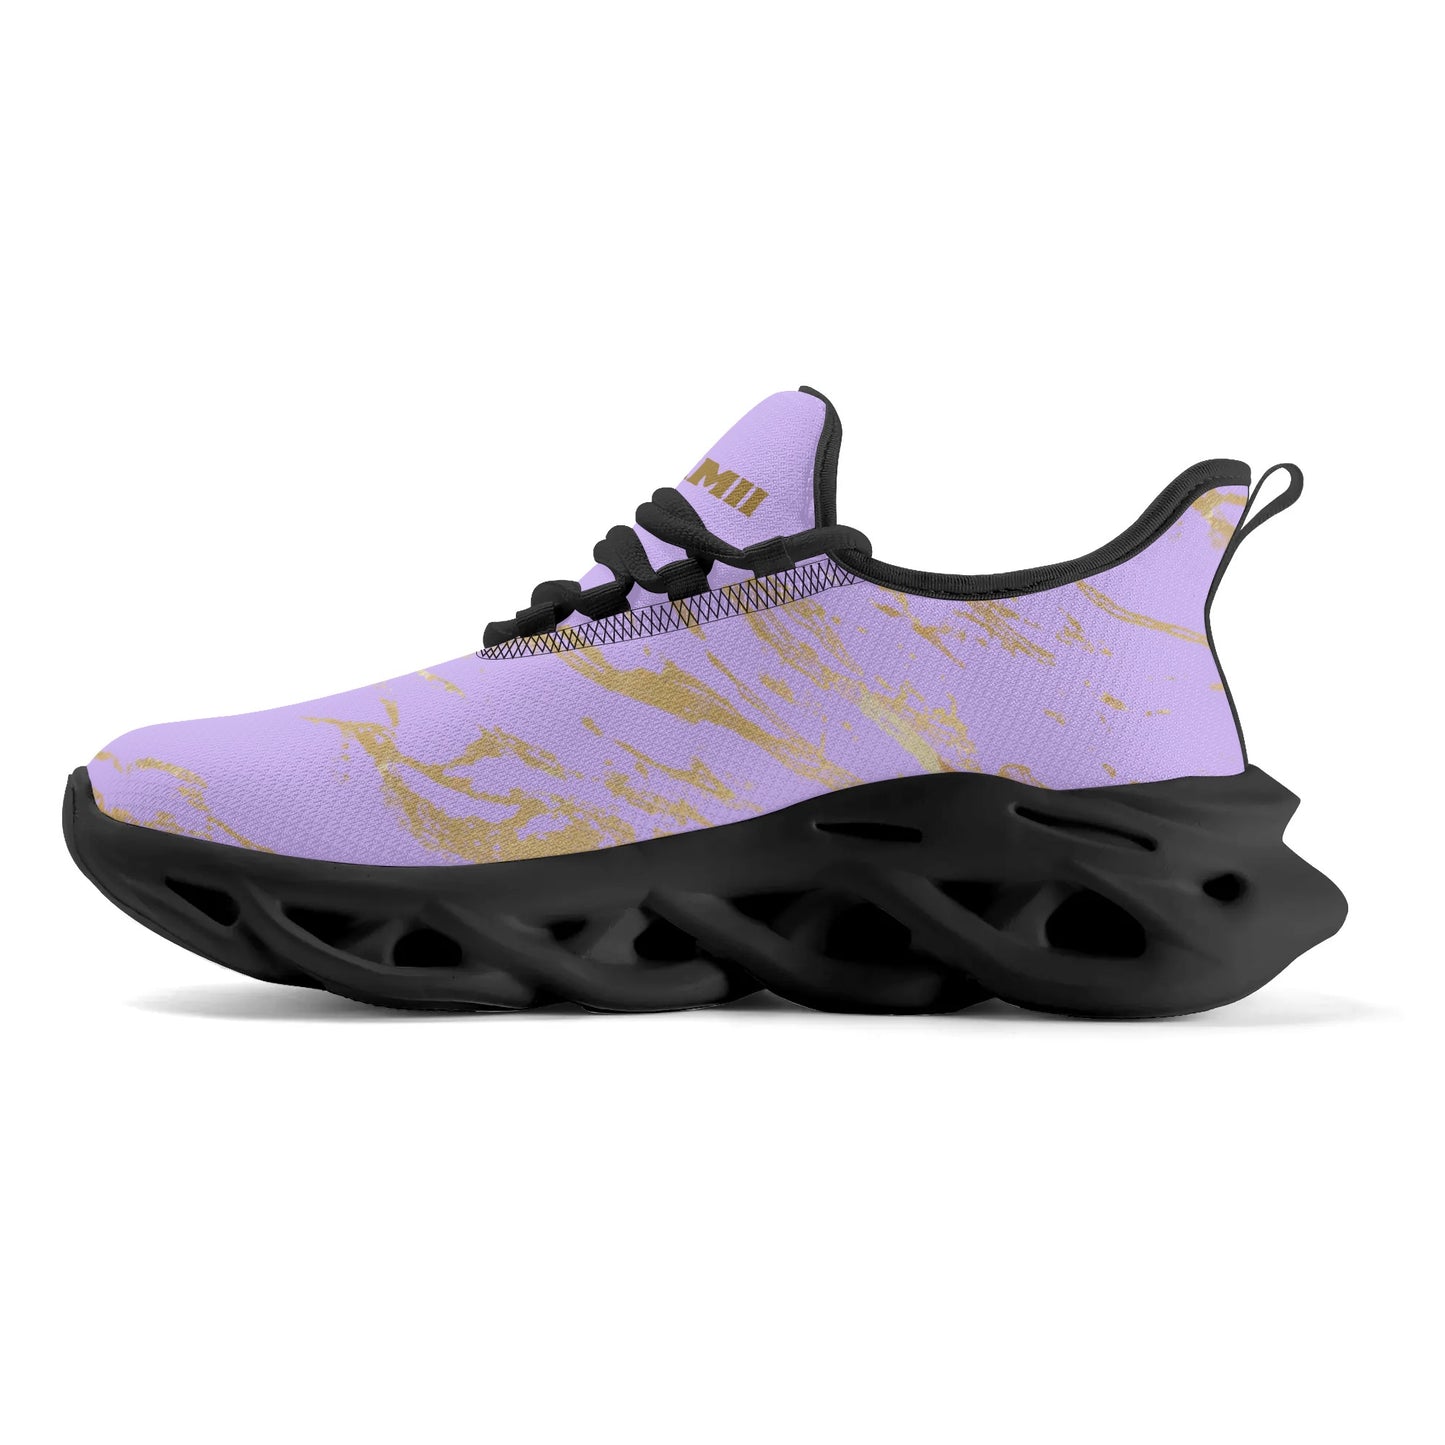 Womens DuGamii Lavender Premium M-sole Sneakers